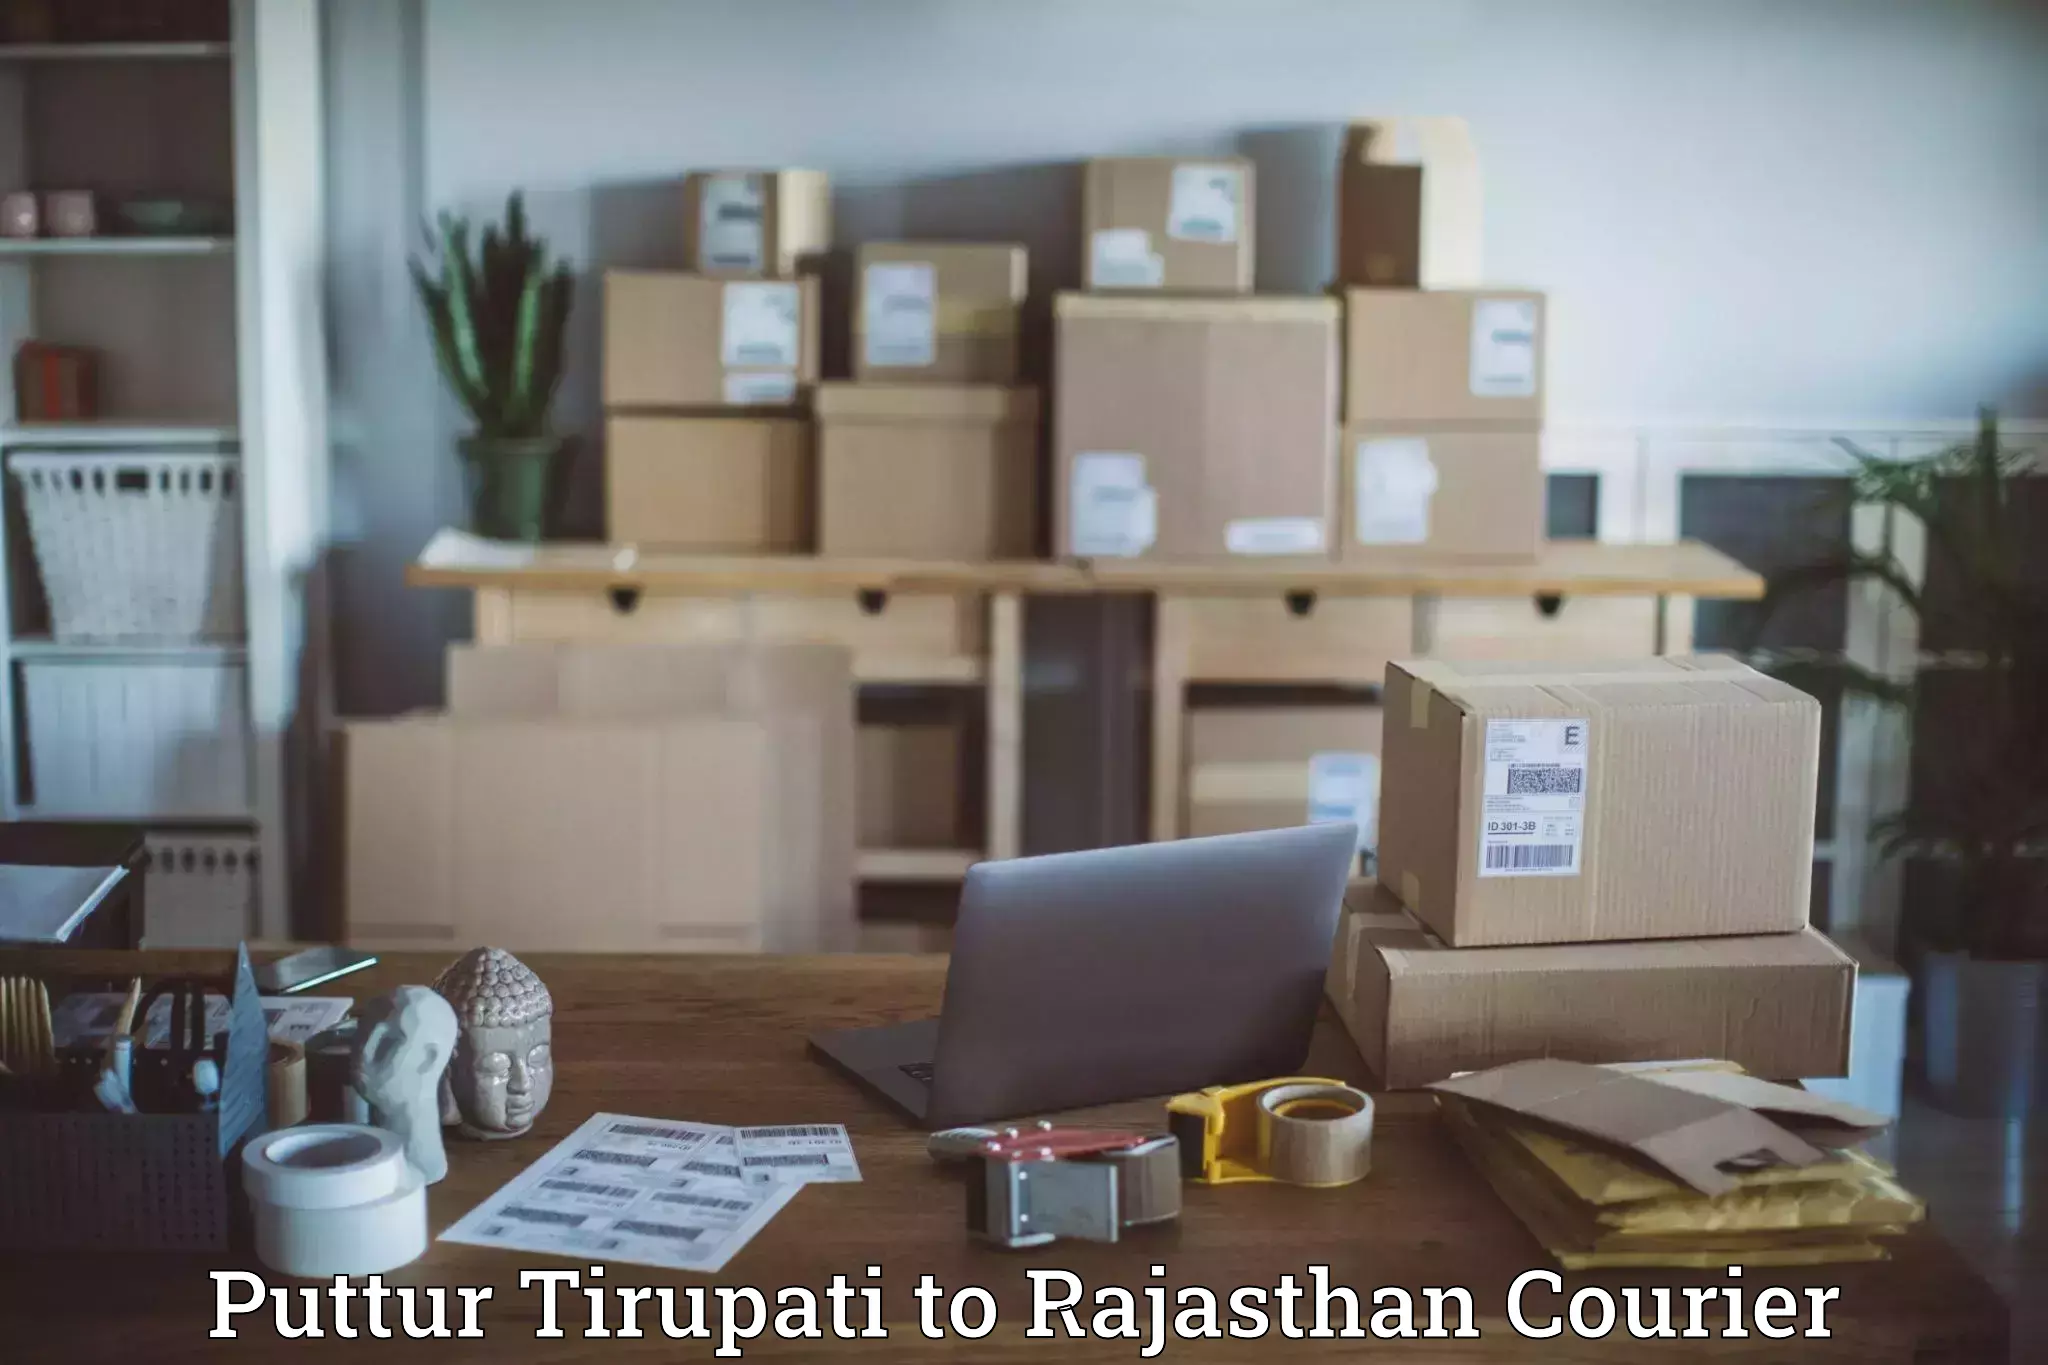 Next-generation courier services Puttur Tirupati to Lohawat